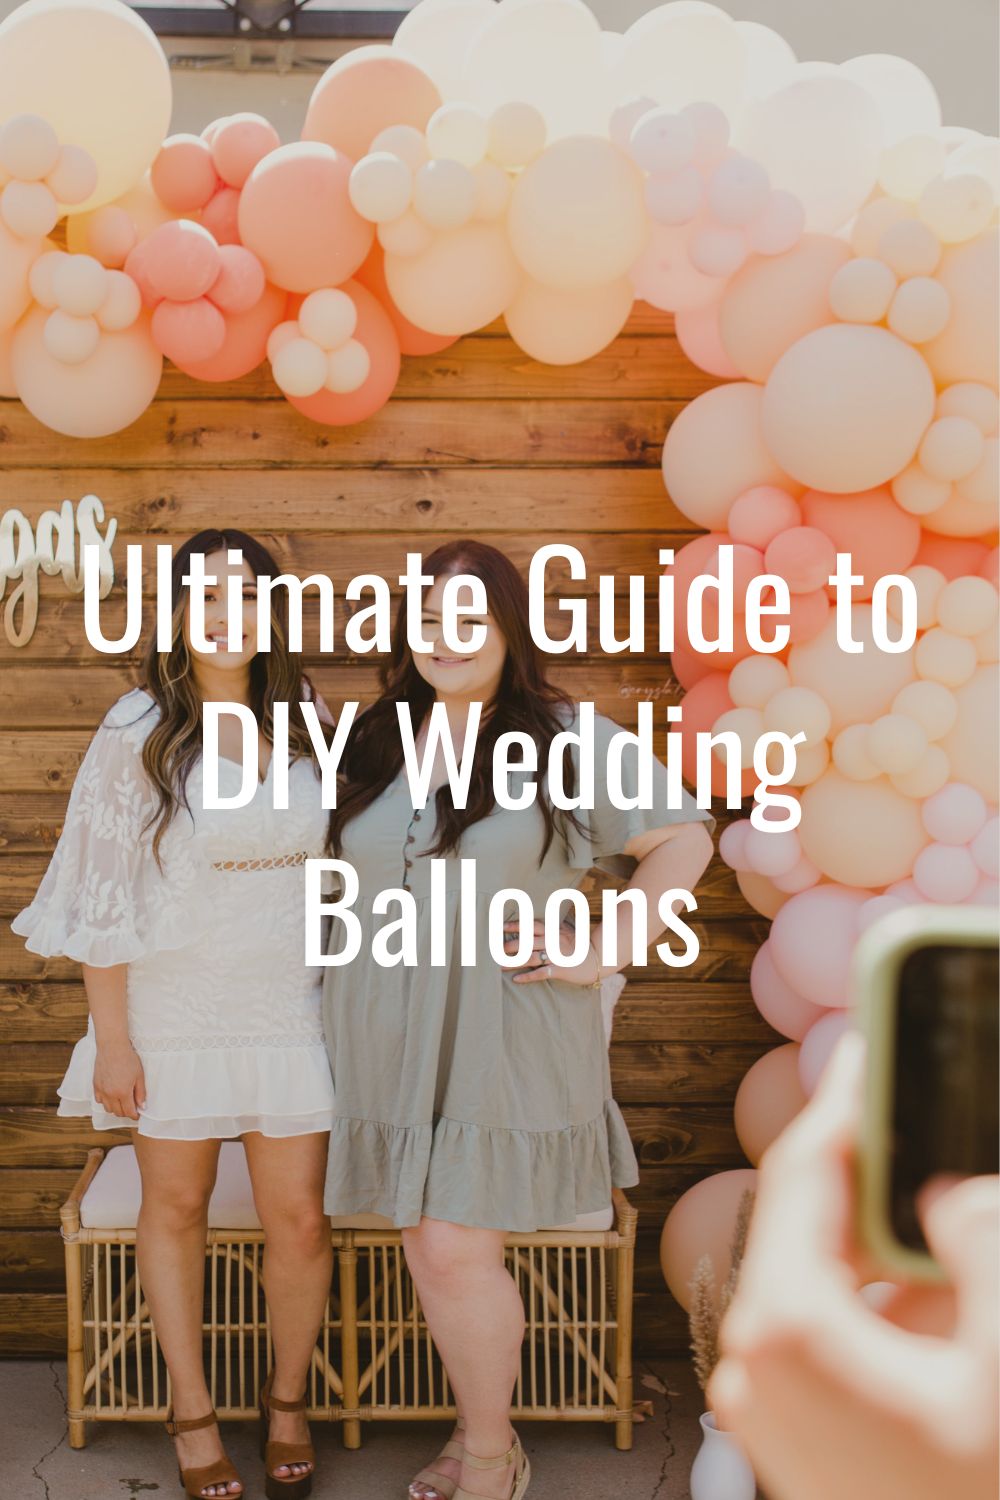 Wedding balloon garland DIY kits